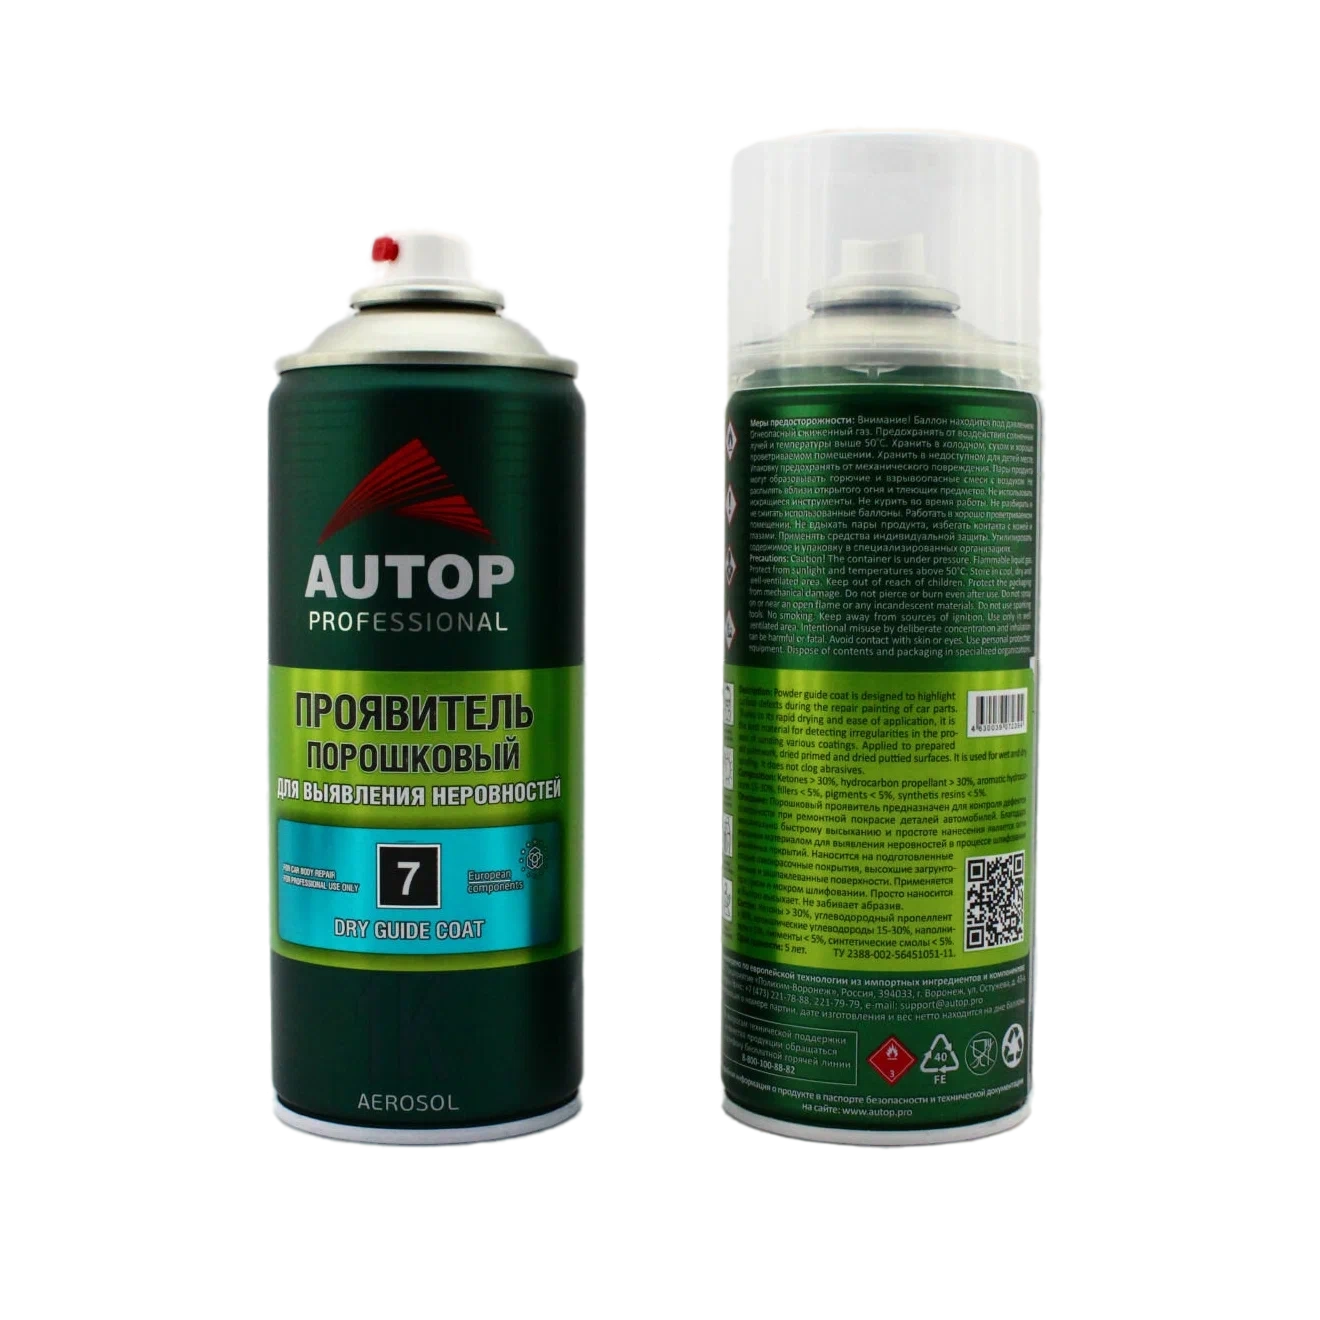 ATP-A07239 Проявитель порошковый №7 AUTOP Dry Guide Coat аэр 520 мл